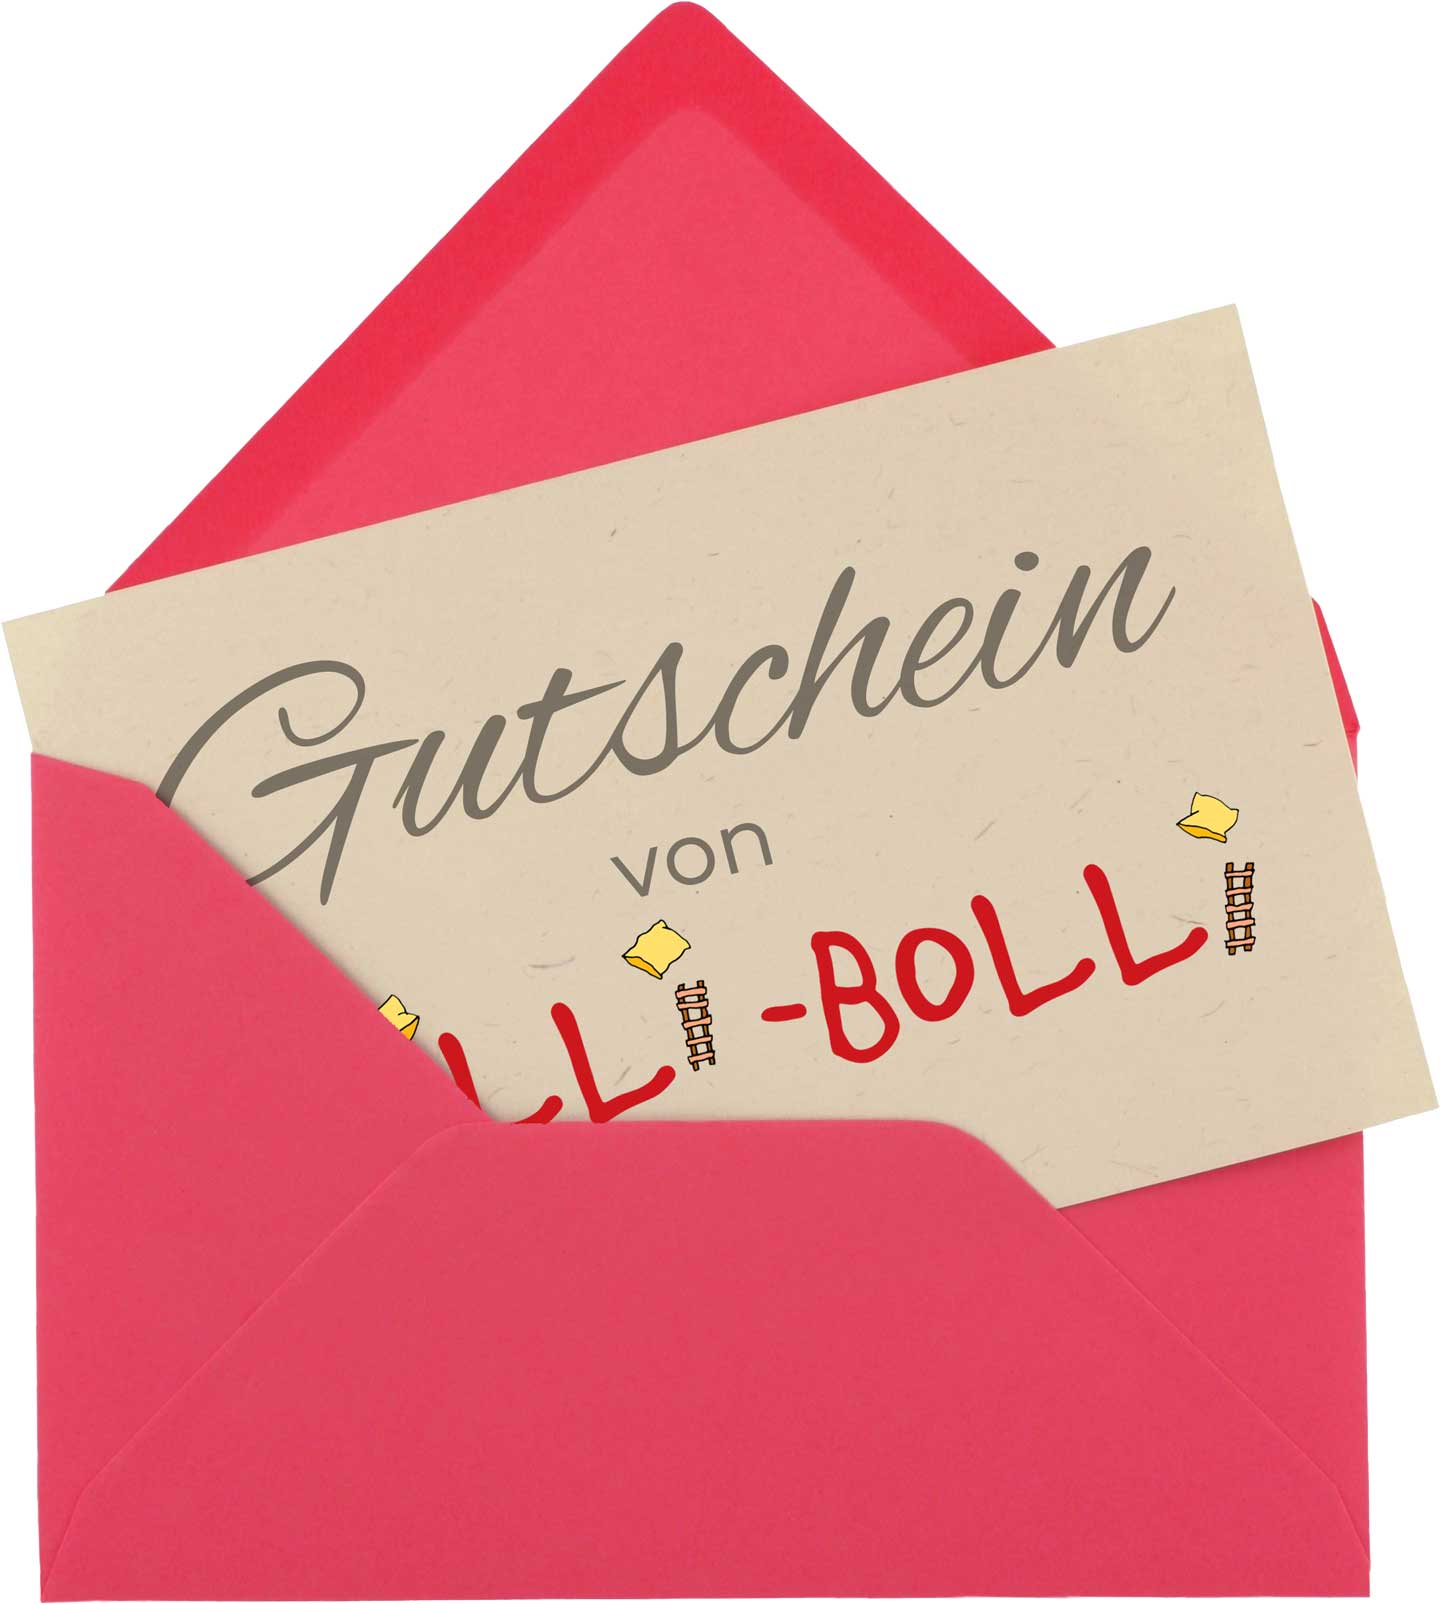 Geschenk­gutschein von Billi-Bolli